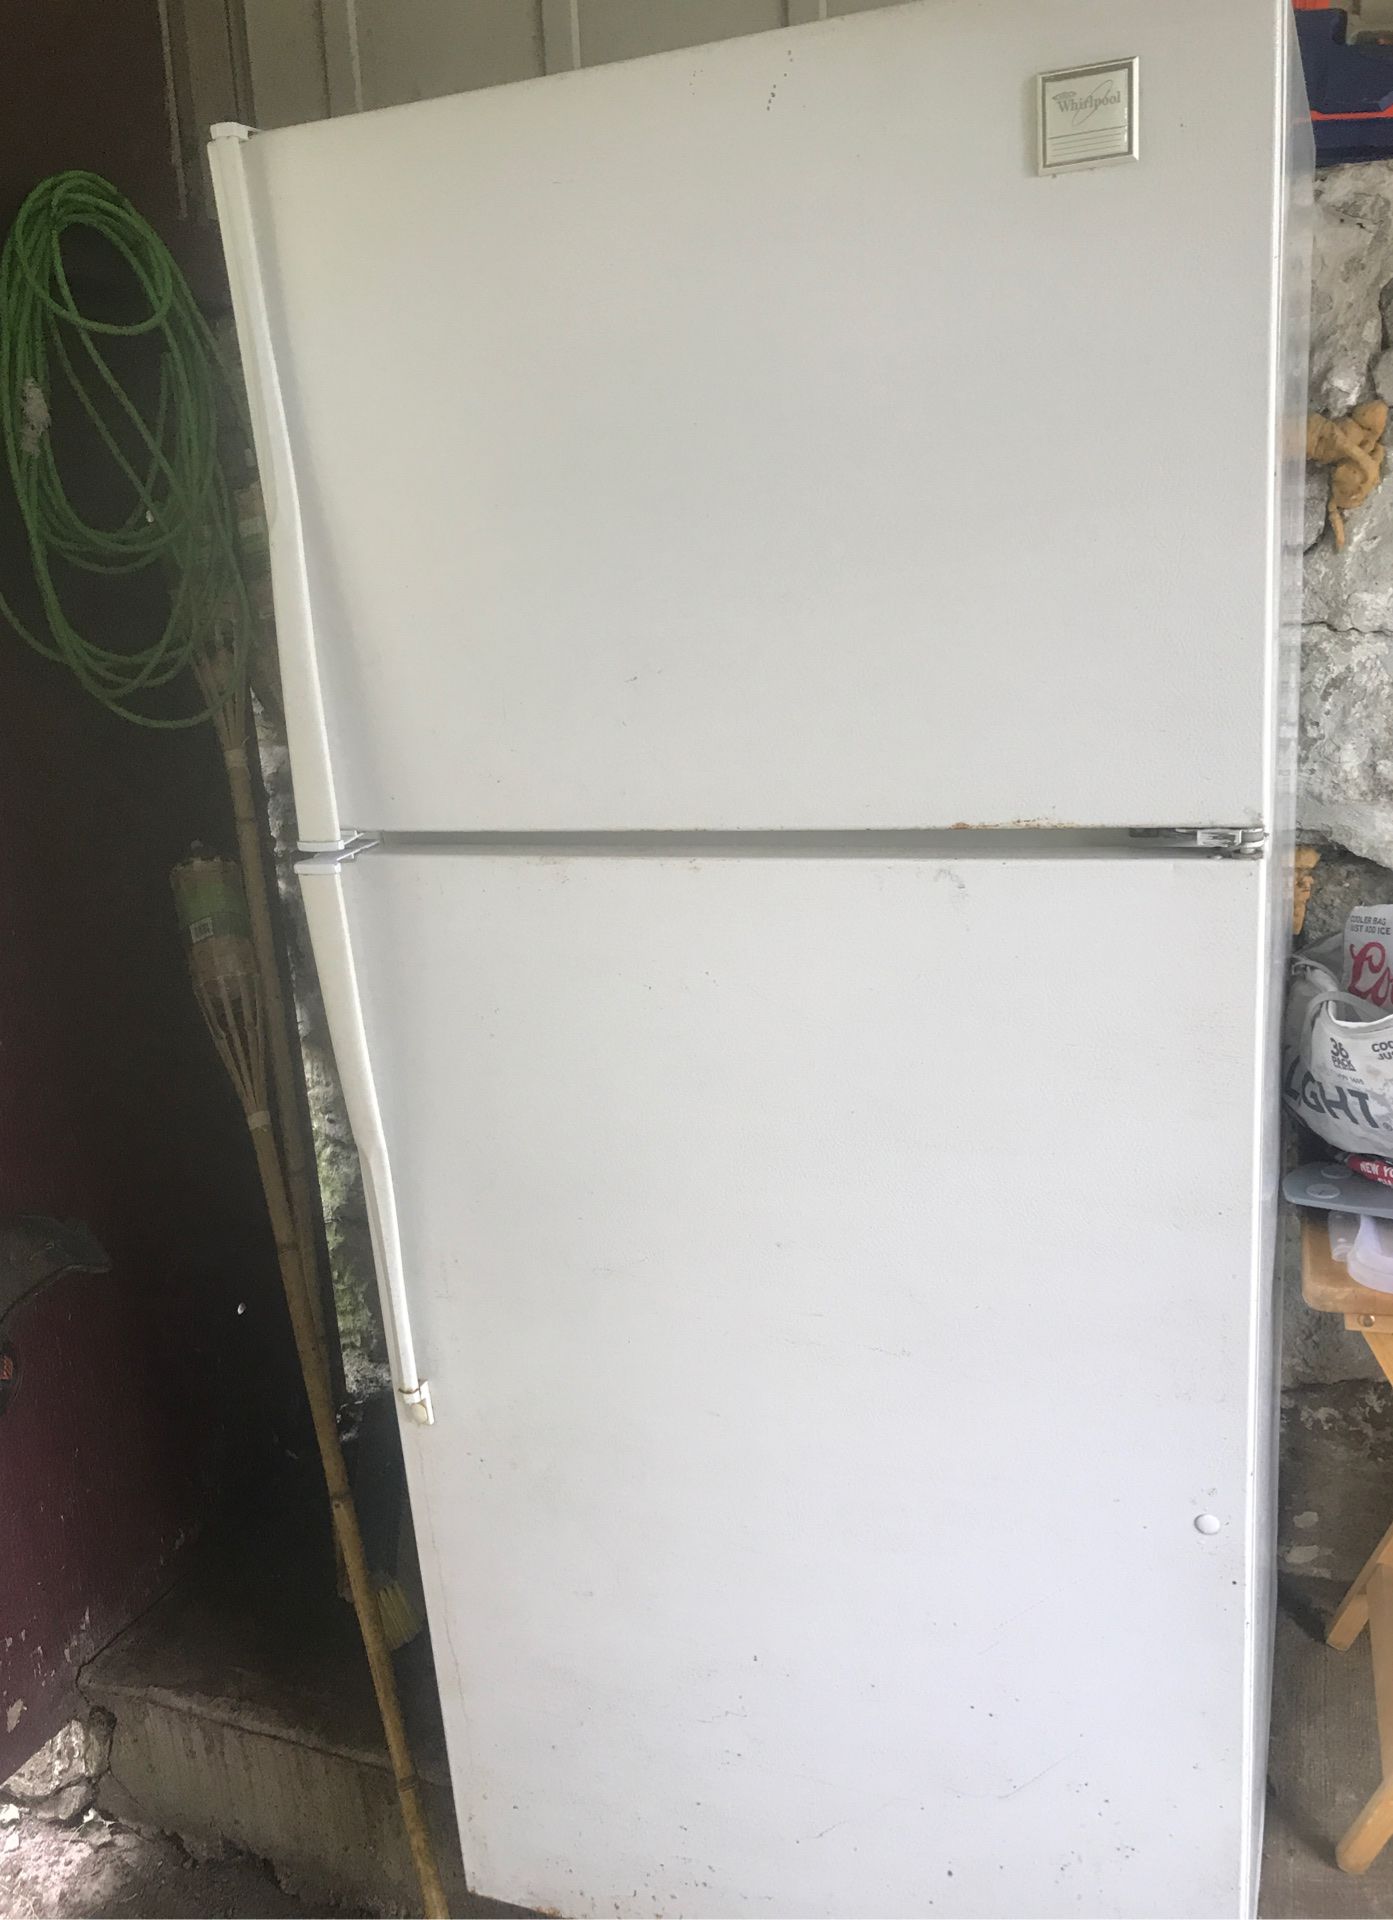 Free fridge scrap